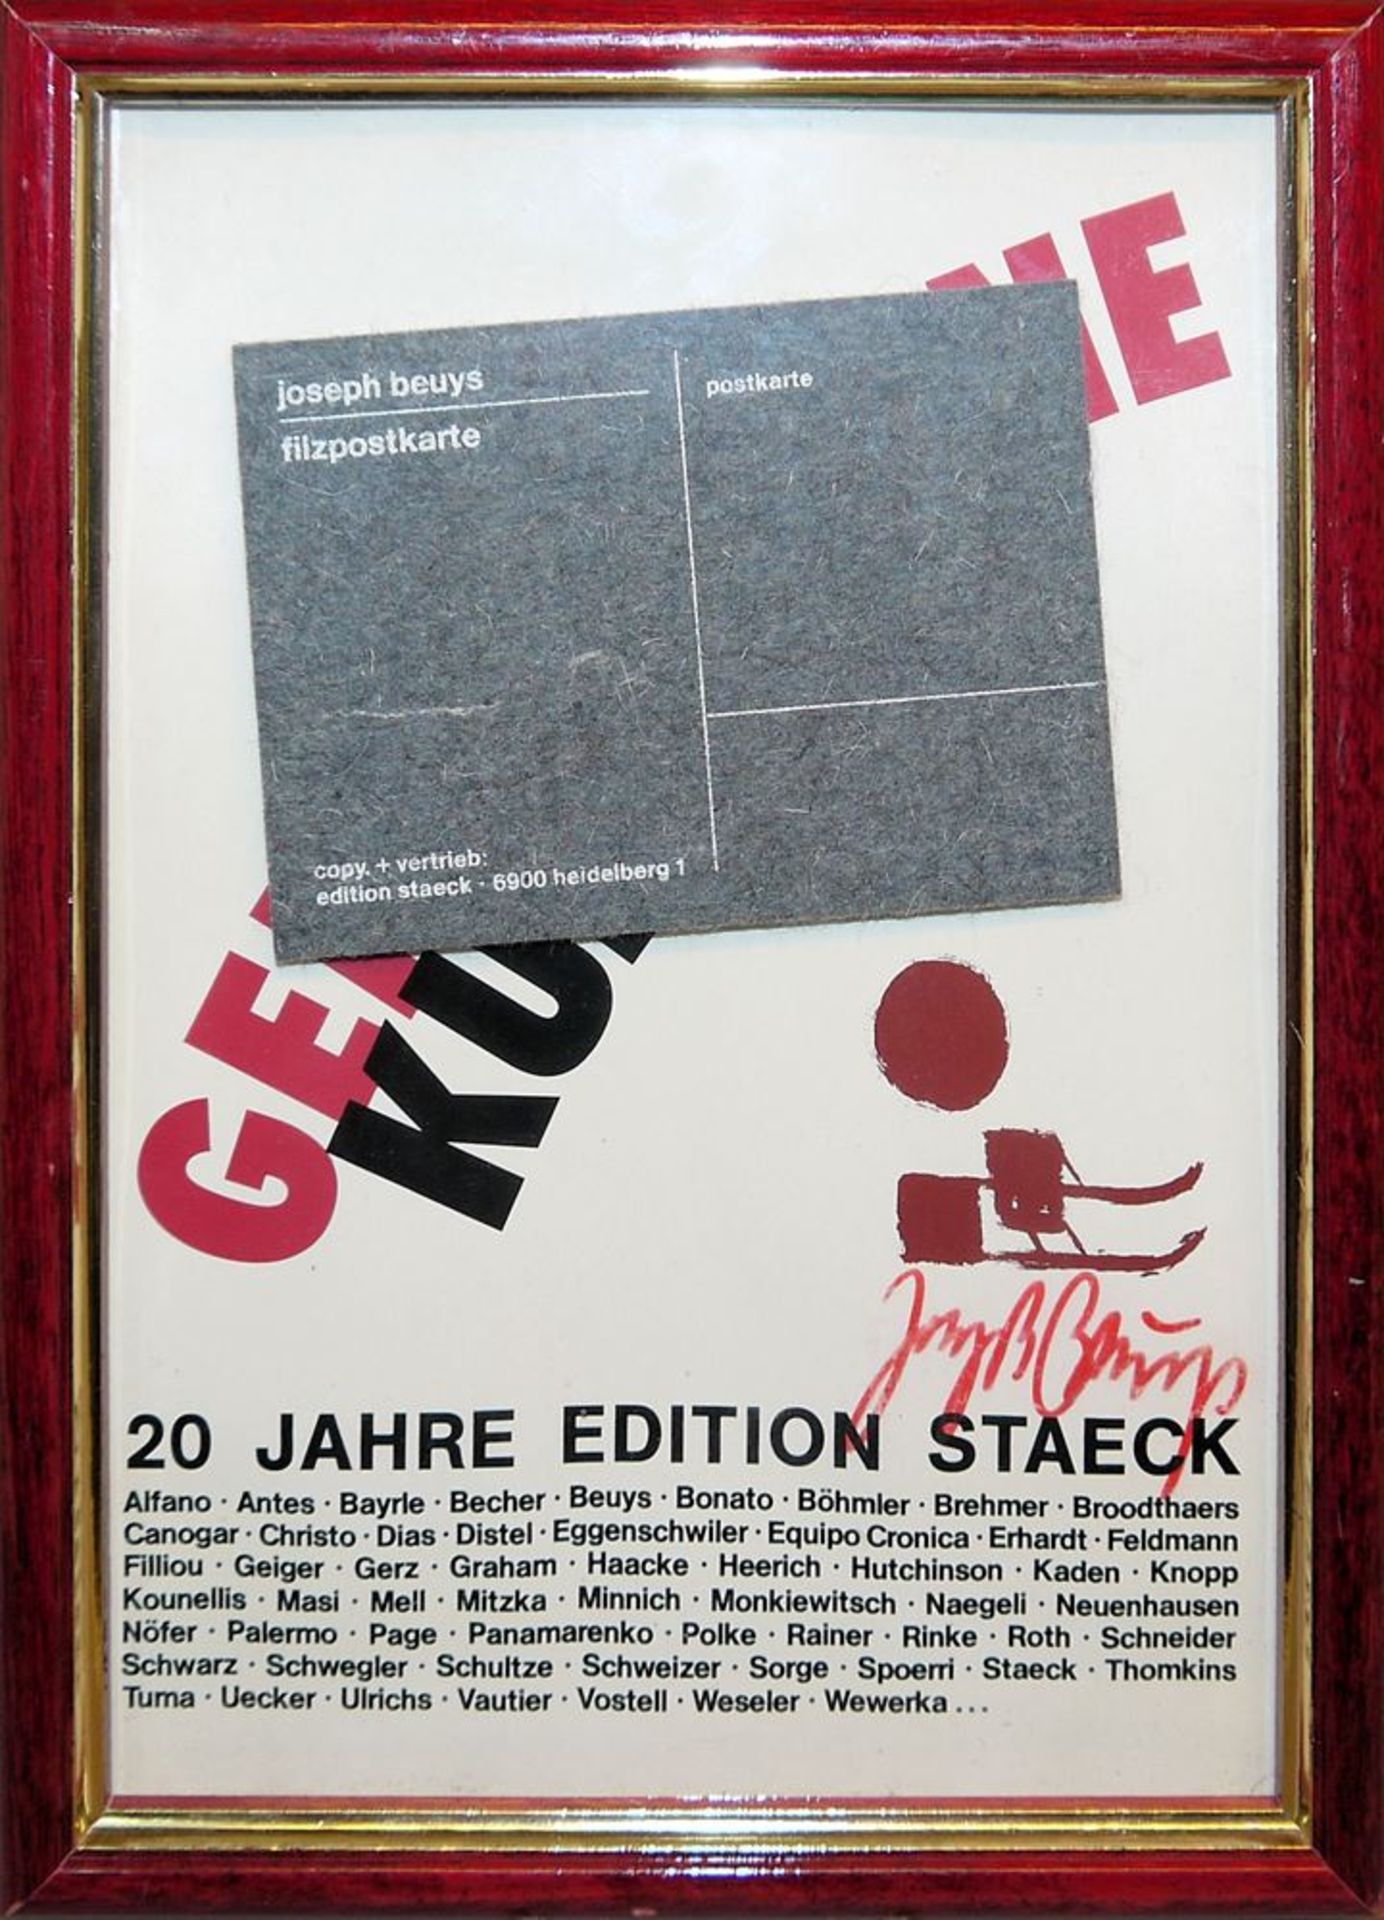 Joseph Beuys, Filzpostkarte "20 Jahre Edition Staeck", Heidelberg, signiert, gerahmt